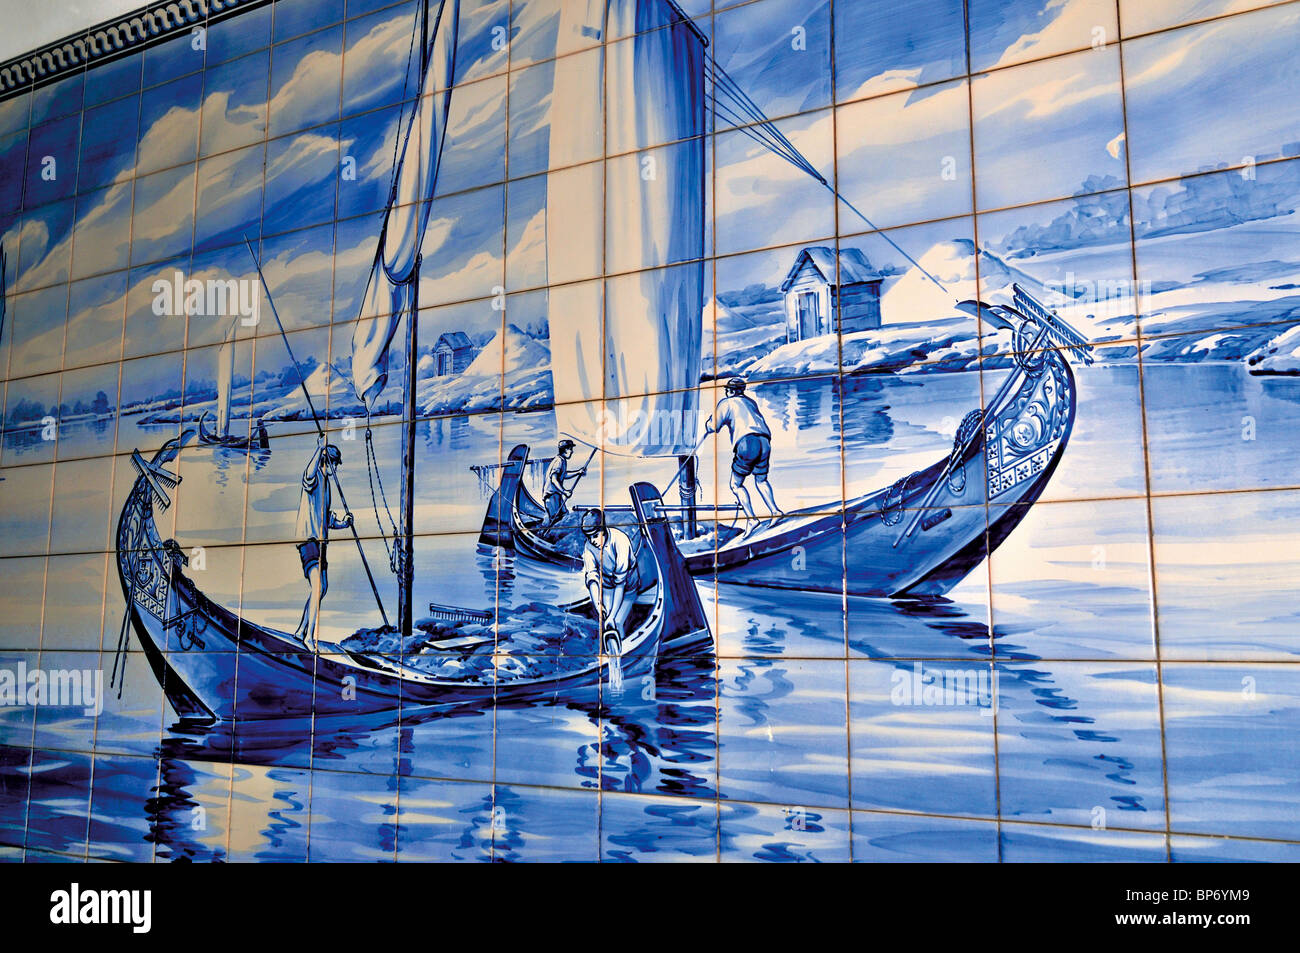 Il Portogallo Aveiro: tradizionale immagine di piastrella che mostra una scena del locale Molicerio imbarcazioni di pesca sul mare di erba Foto Stock